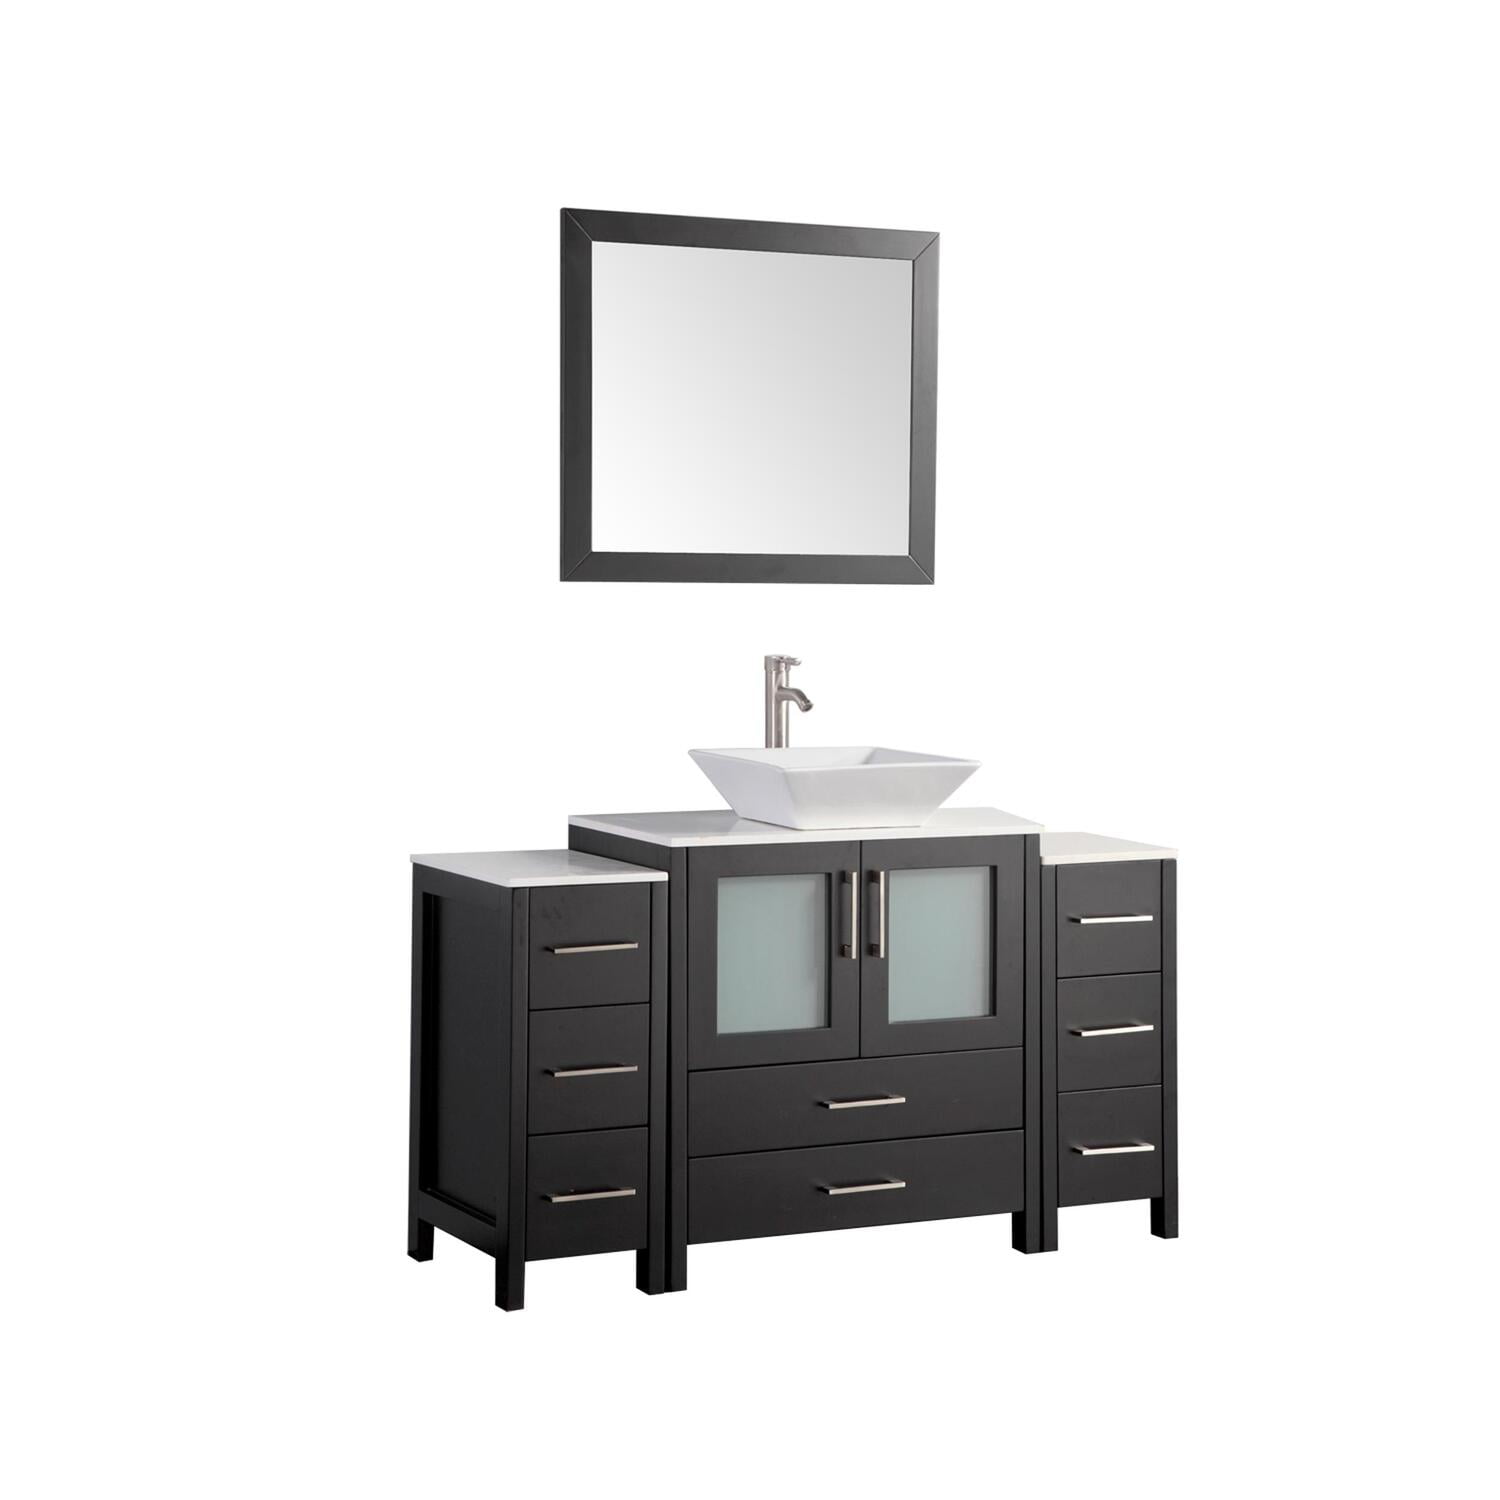 Vanity Art 54 Inch Single Sink Bathroom Vanity Set With Ceramic Vanity Top Walmartcom Walmartcom